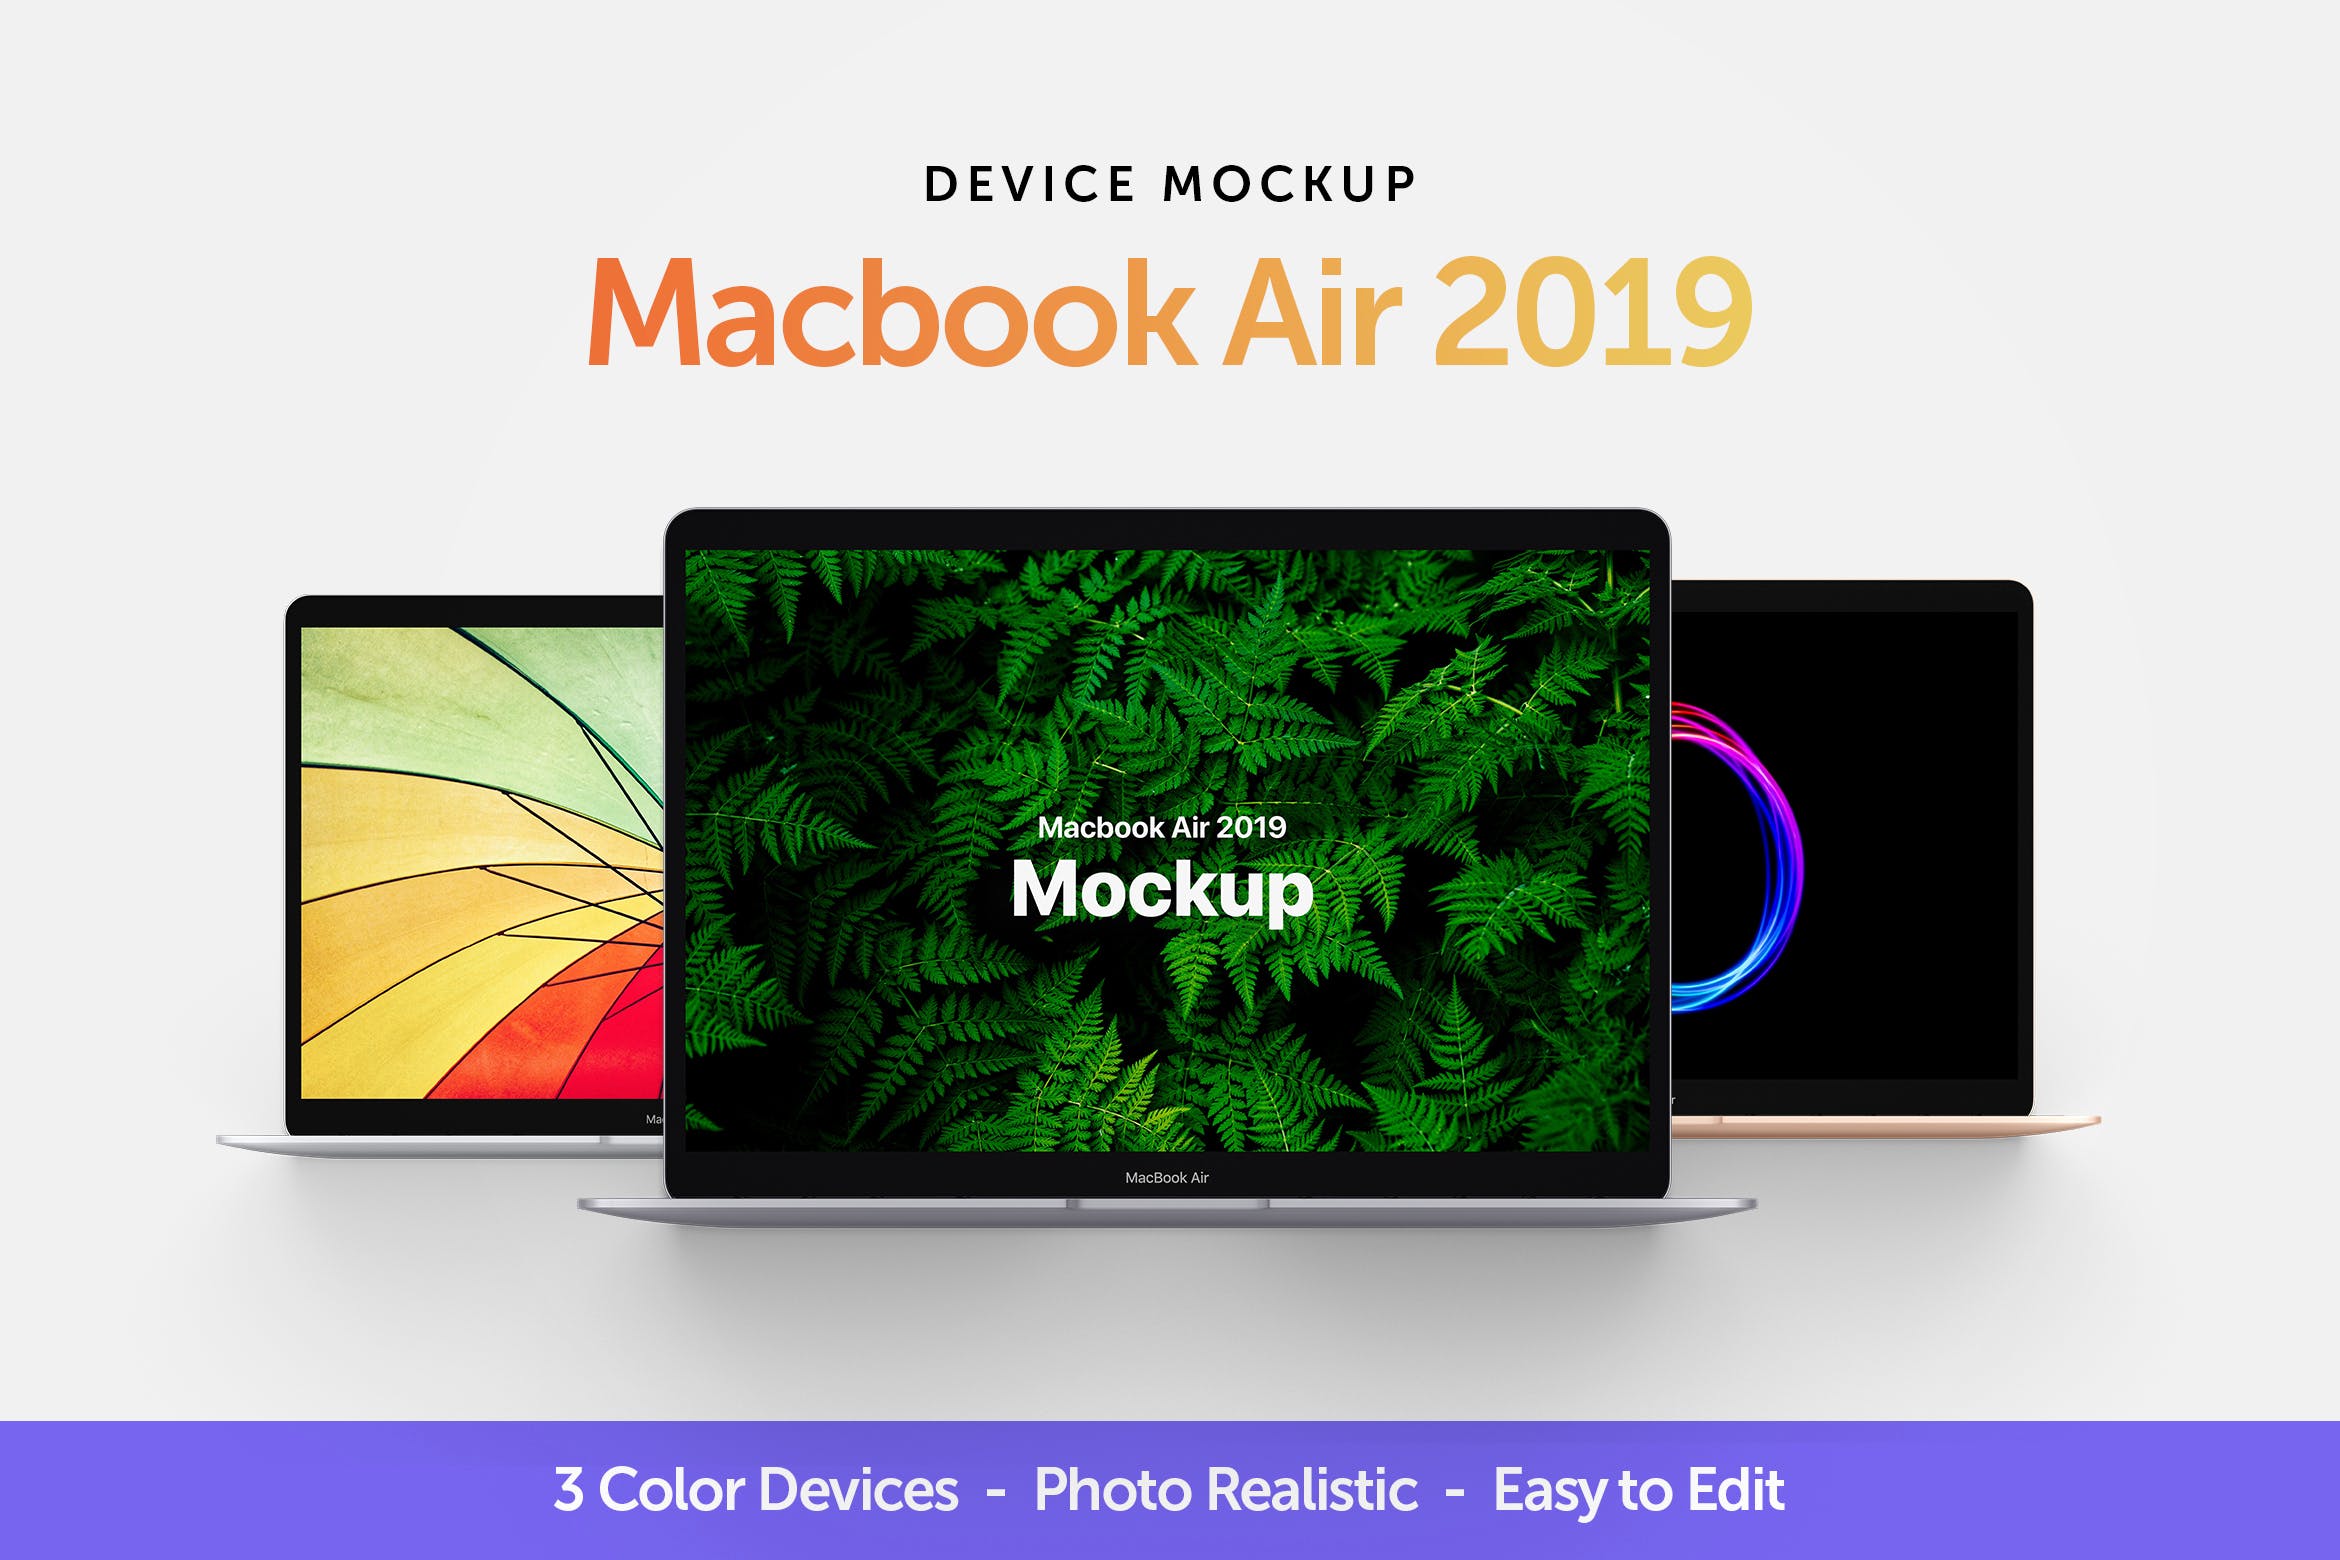 MacBook 2019版本Web网站设计案例展示样机 Macbook Air 2019 Mockup插图